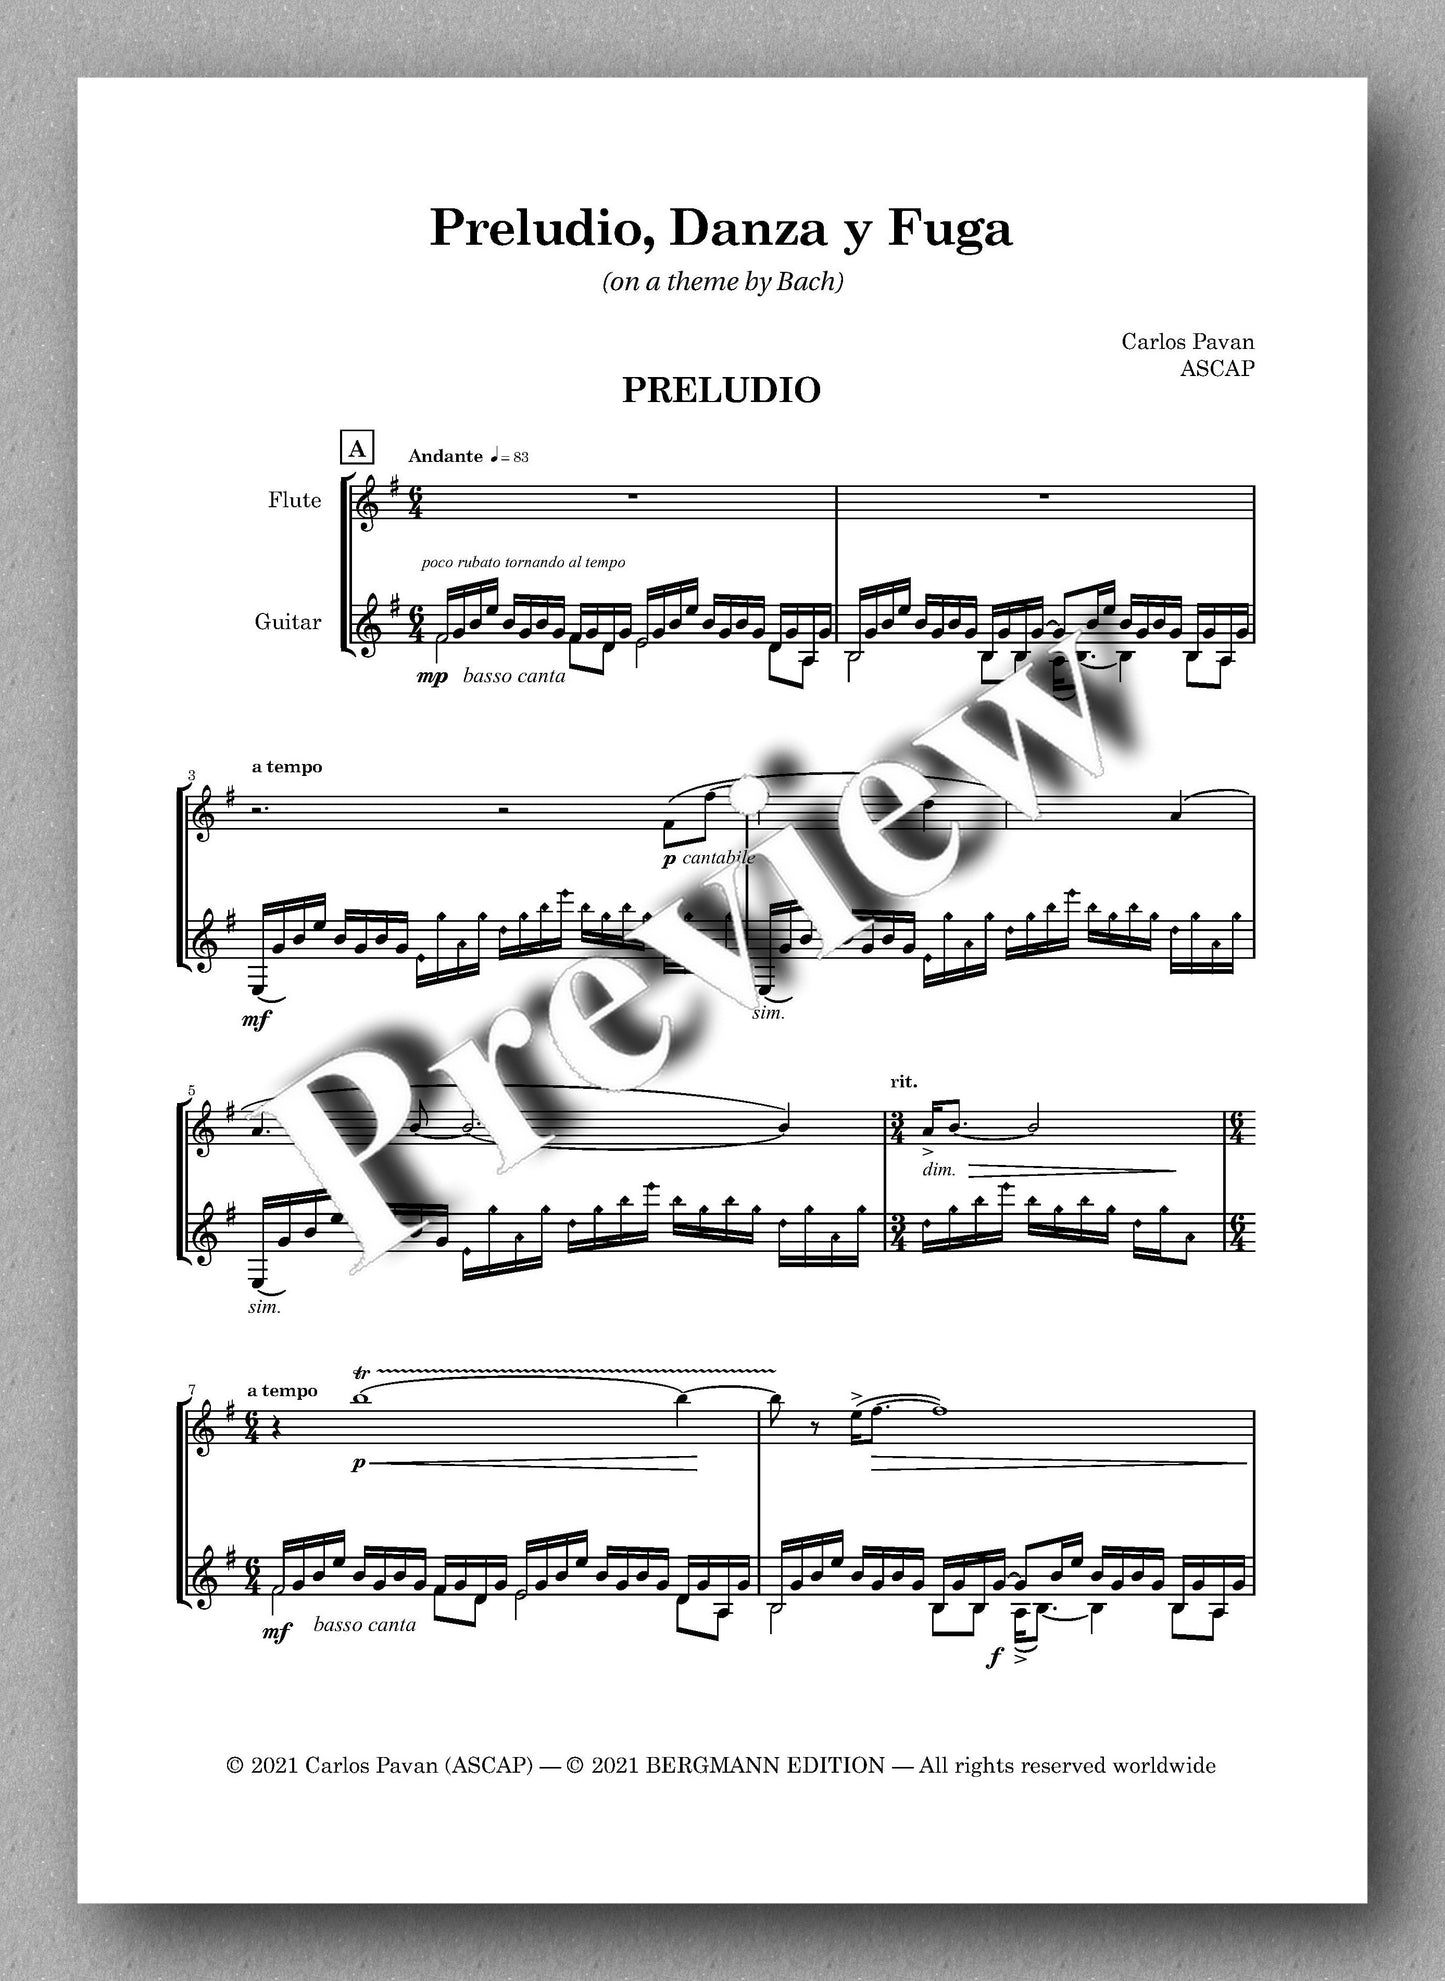 Pavan, Preludio, Danza y Fuga - music score 1